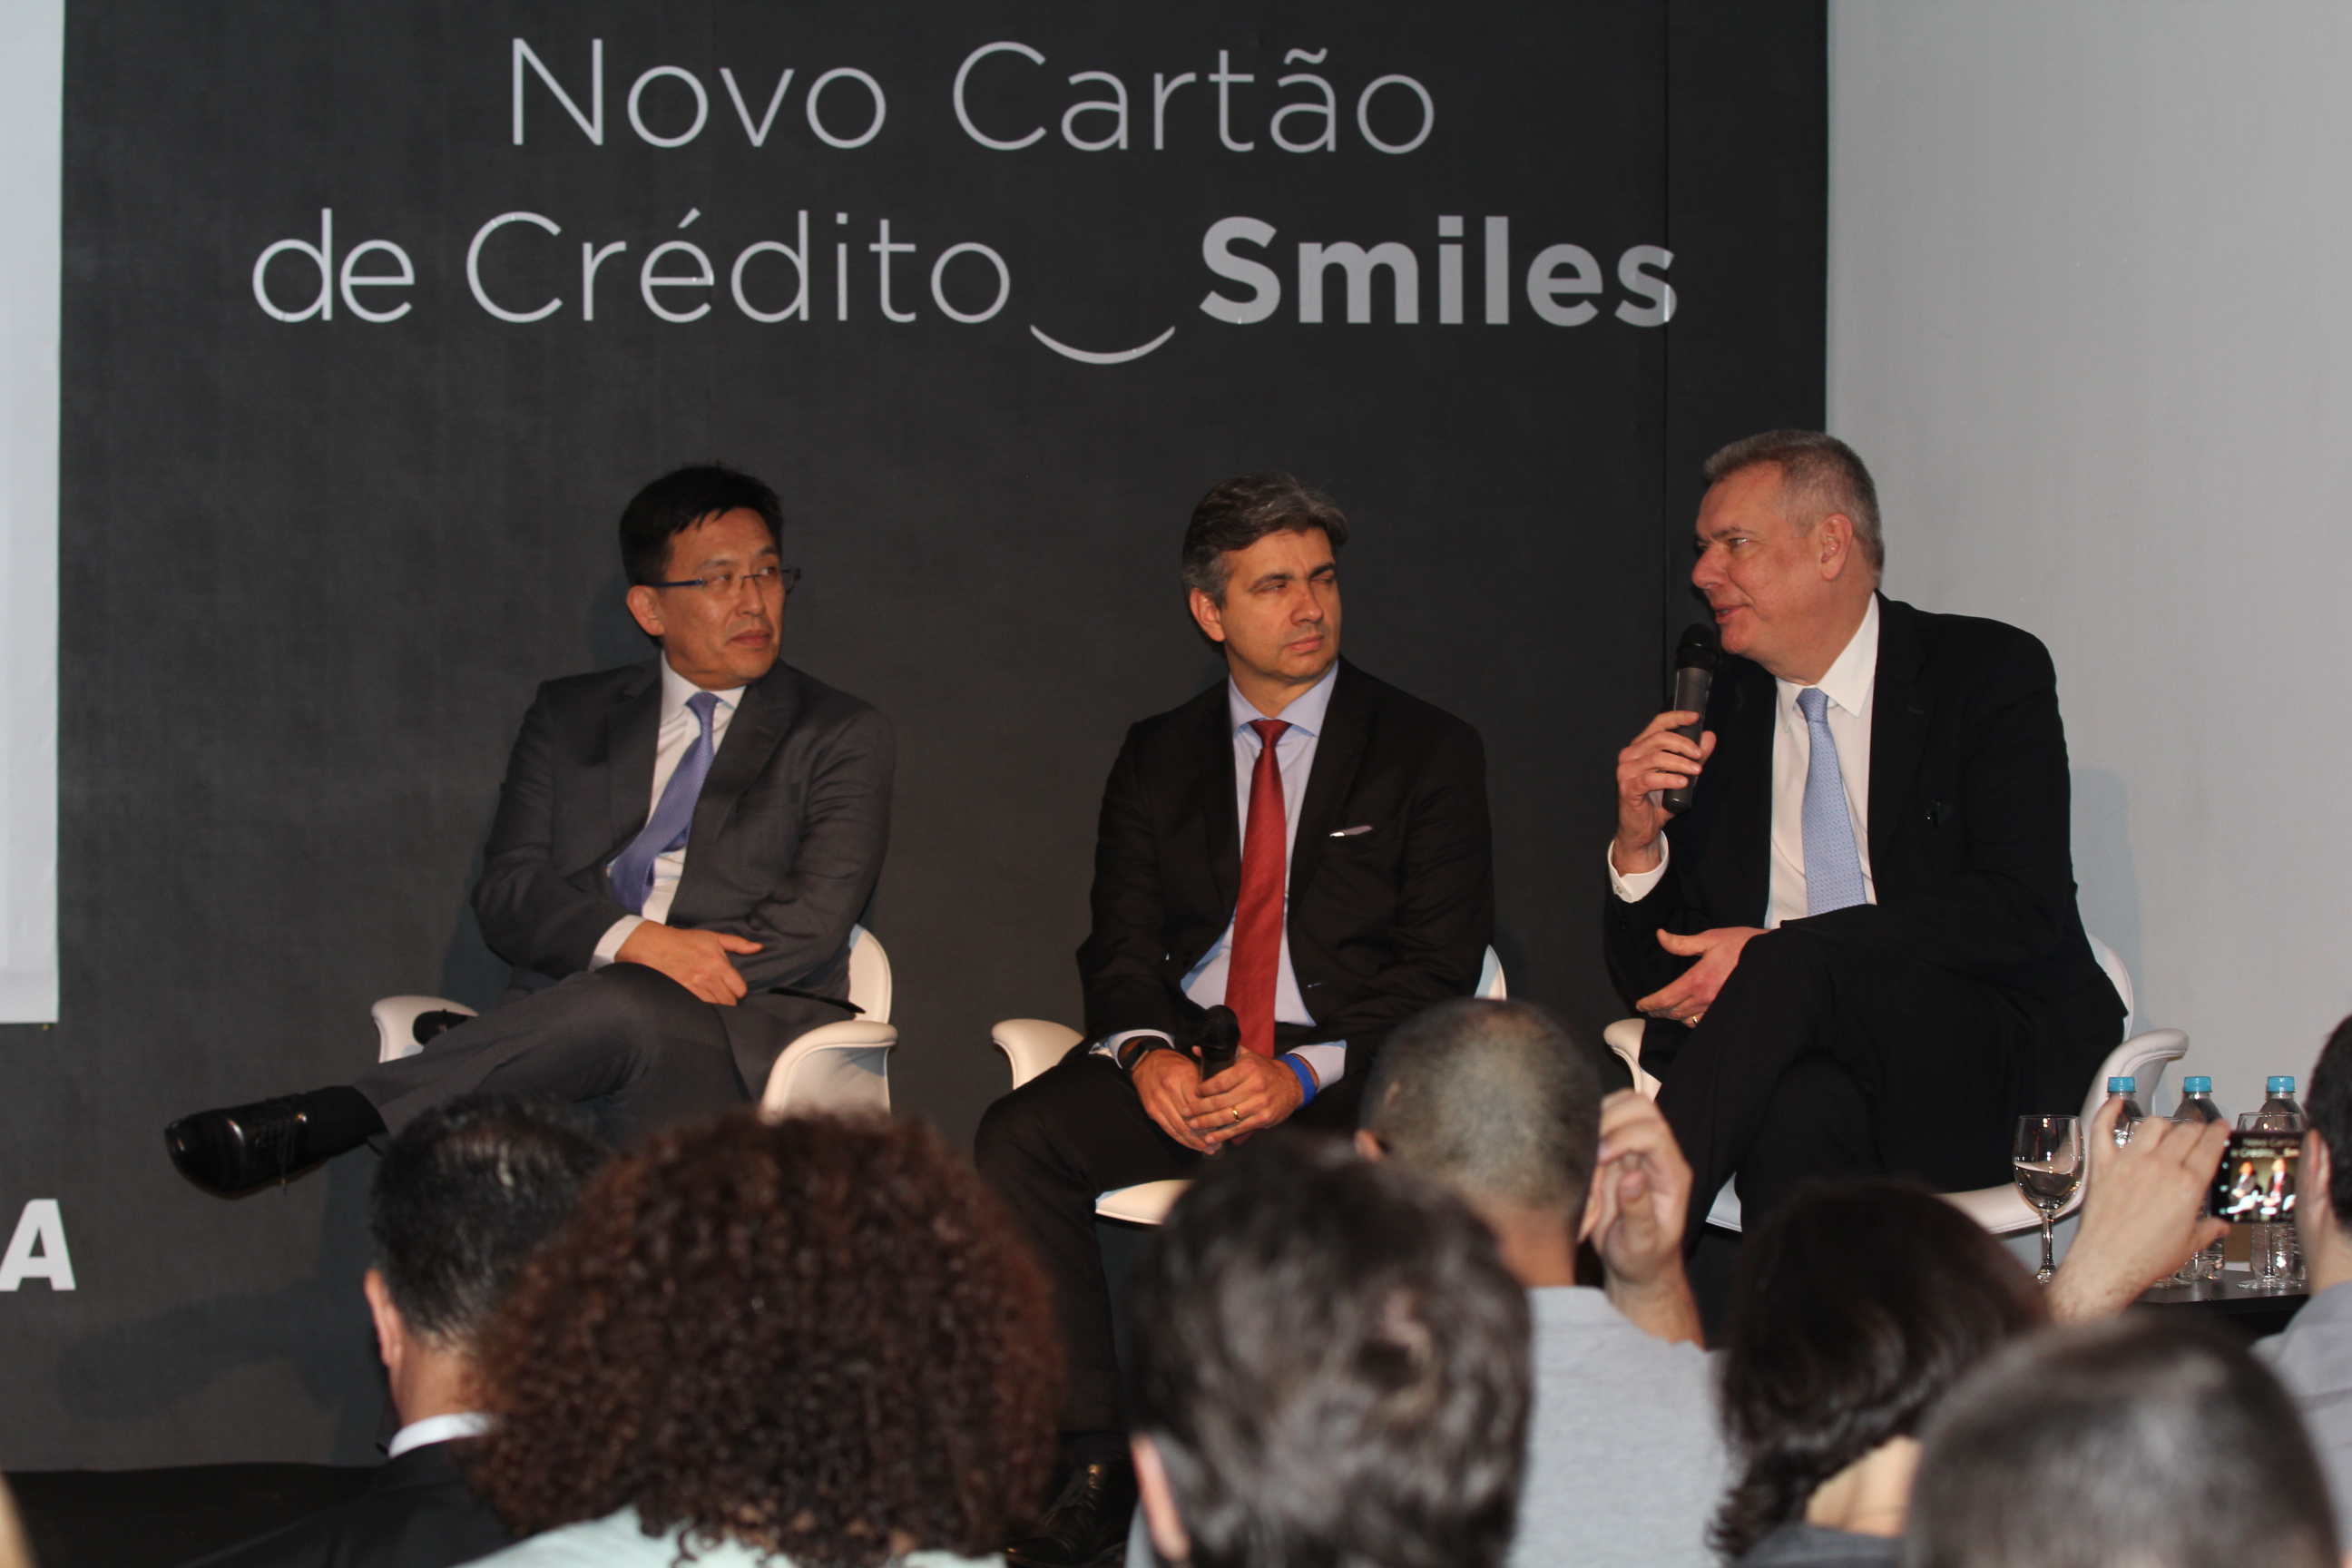 Evento de apresentação do Novo Cartão de Créditos Smiles